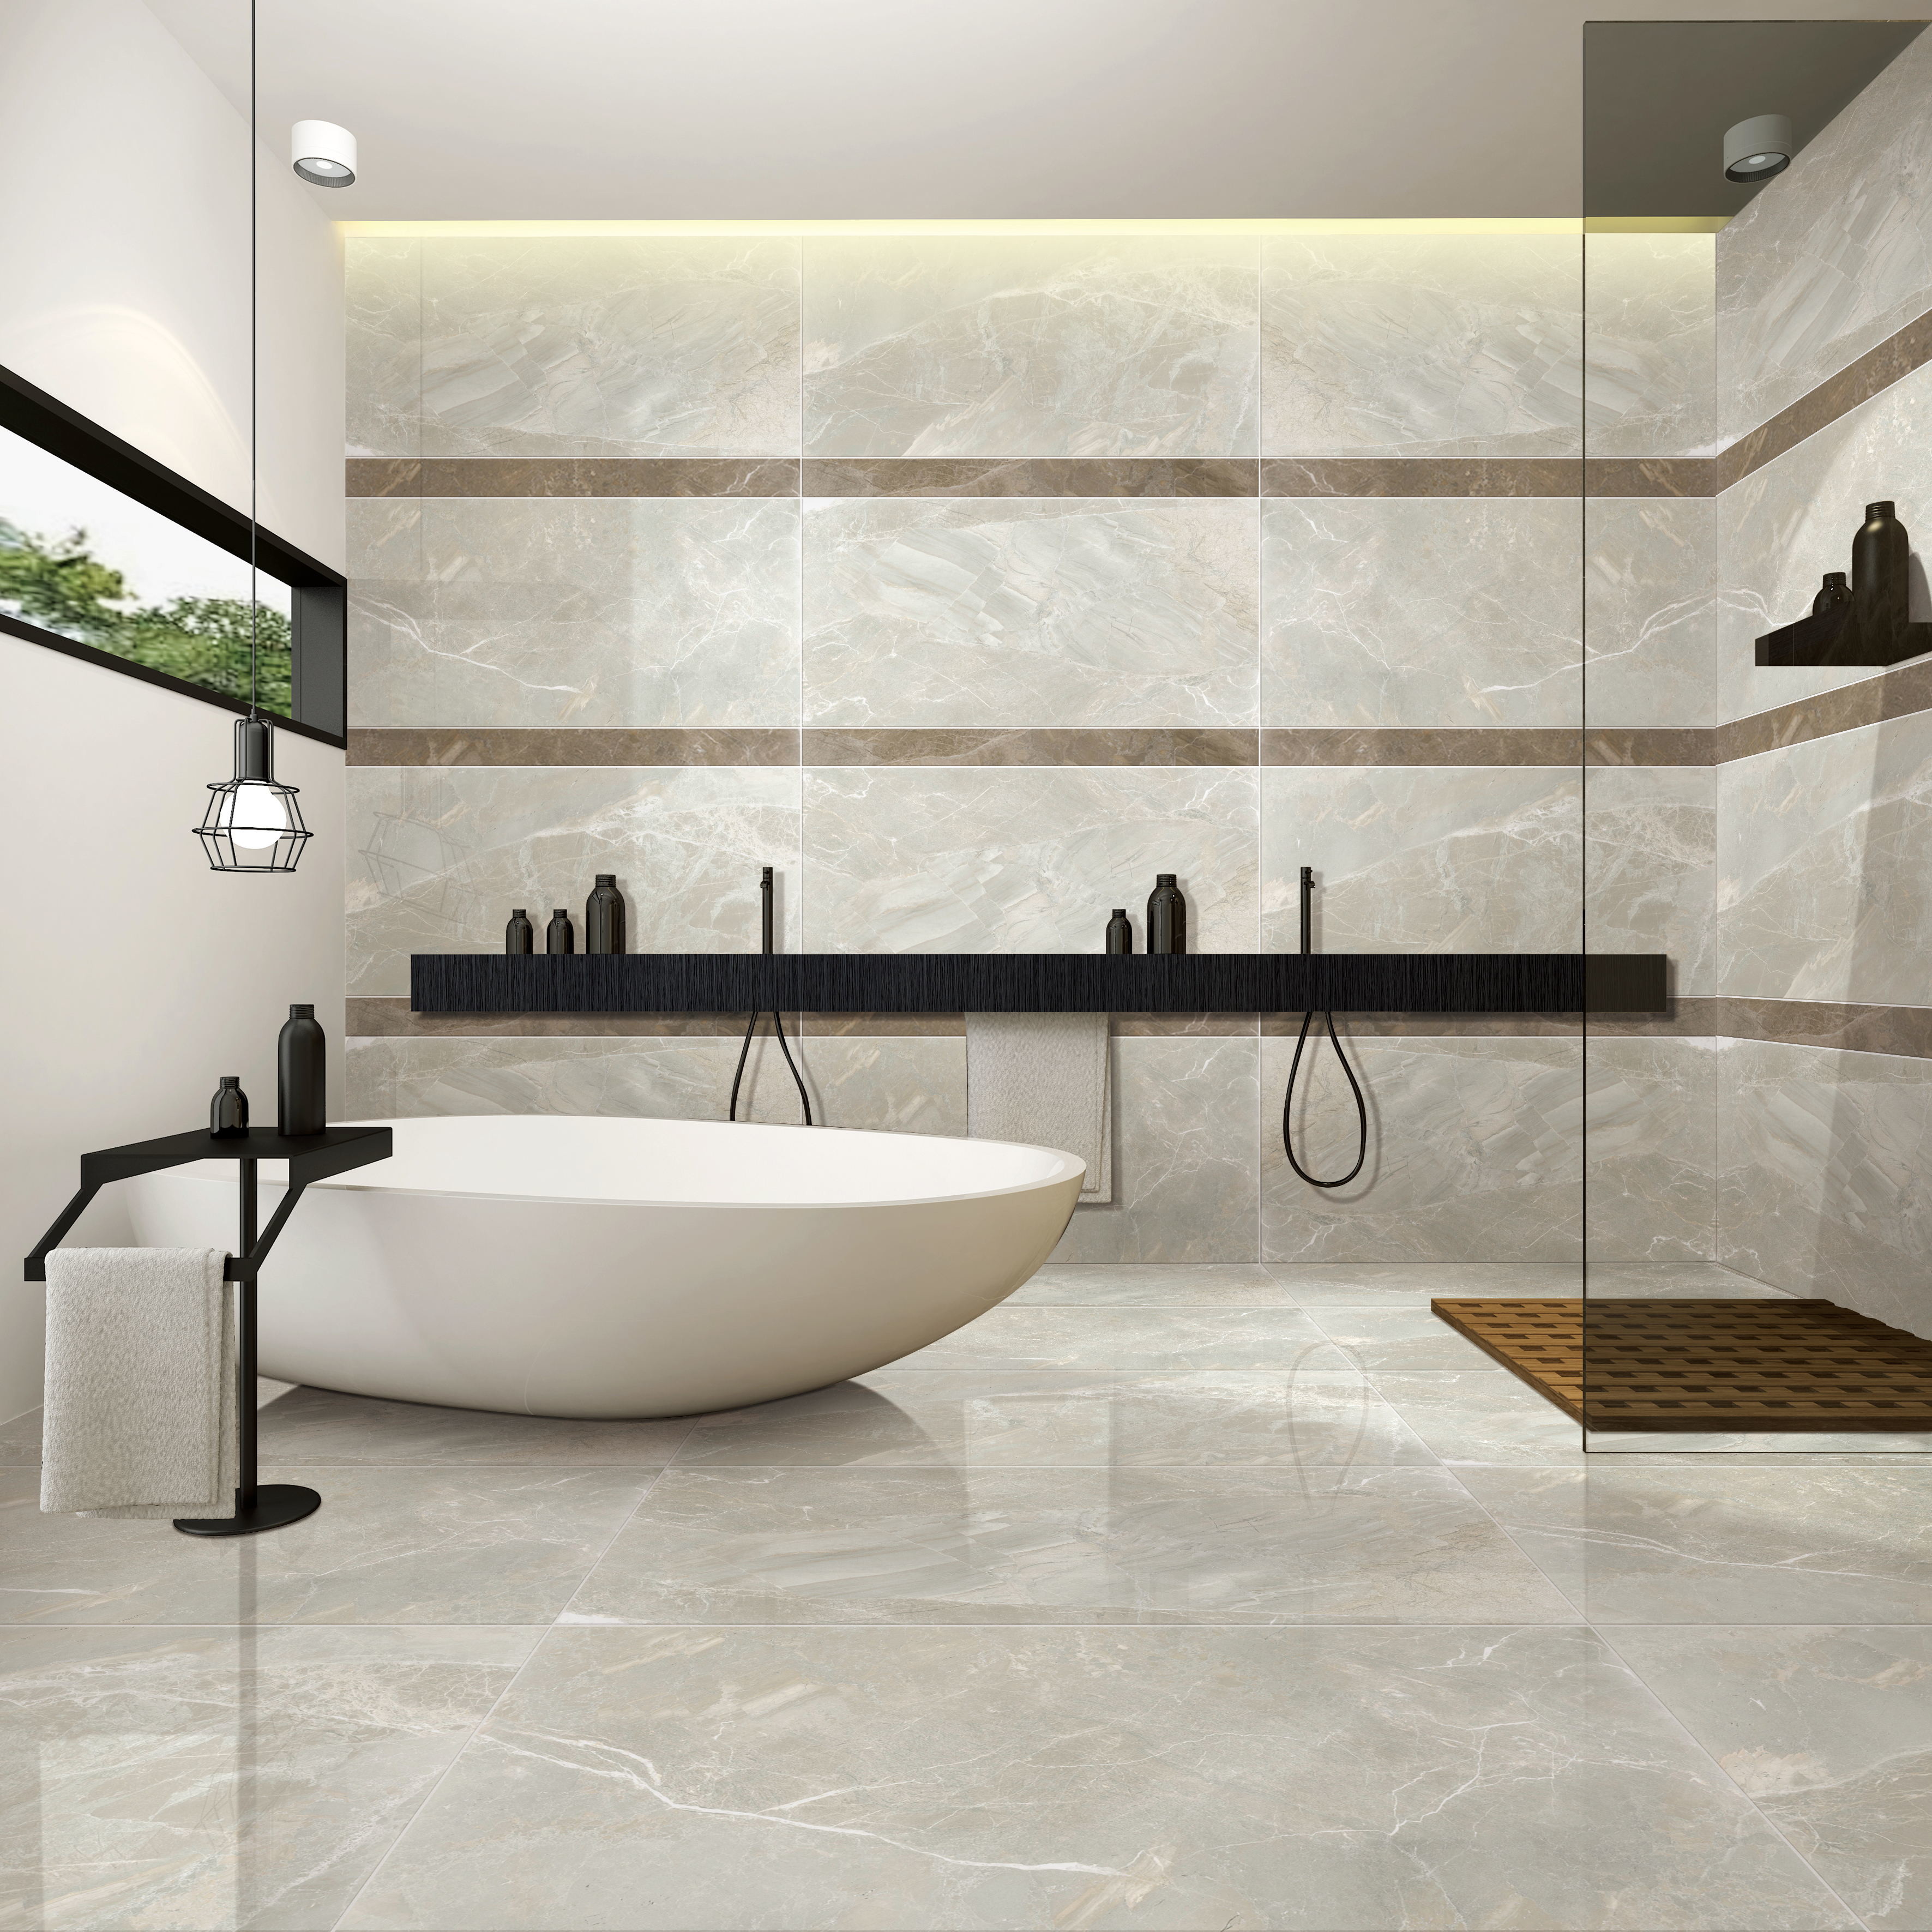 Ceramic Or Porcelain Tile For Bathroom Floor – Flooring Tips